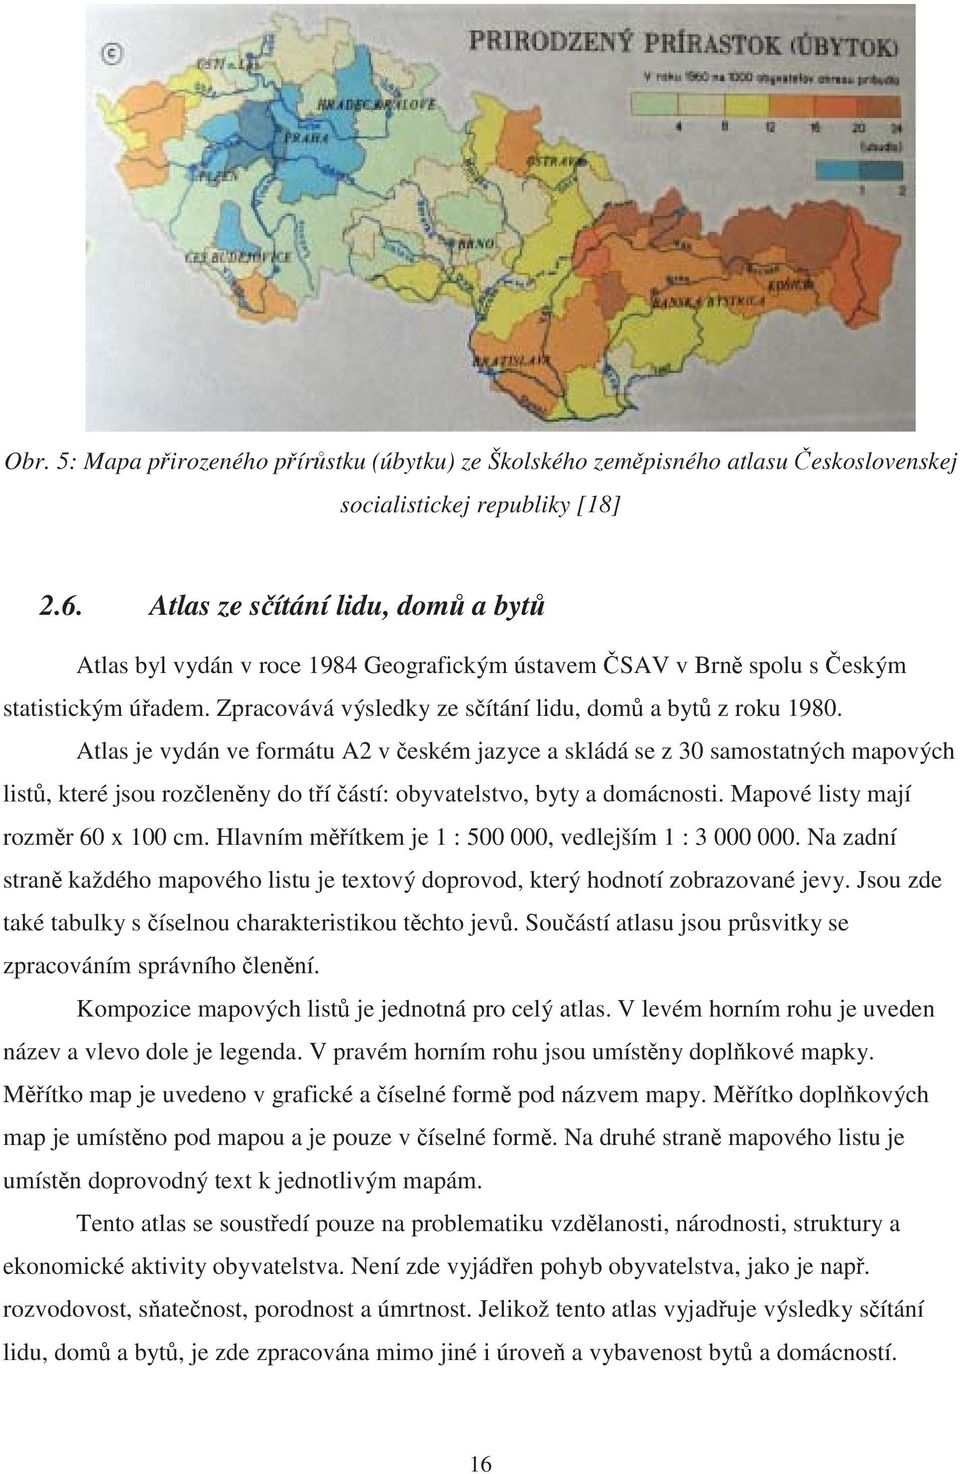 Atlas je vydán ve formátu A2 v eském jazyce a skládá se z 30 samostatných mapových list, které jsou rozlenny do tí ástí: obyvatelstvo, byty a domácnosti. Mapové listy mají rozmr 60 x 100 cm.